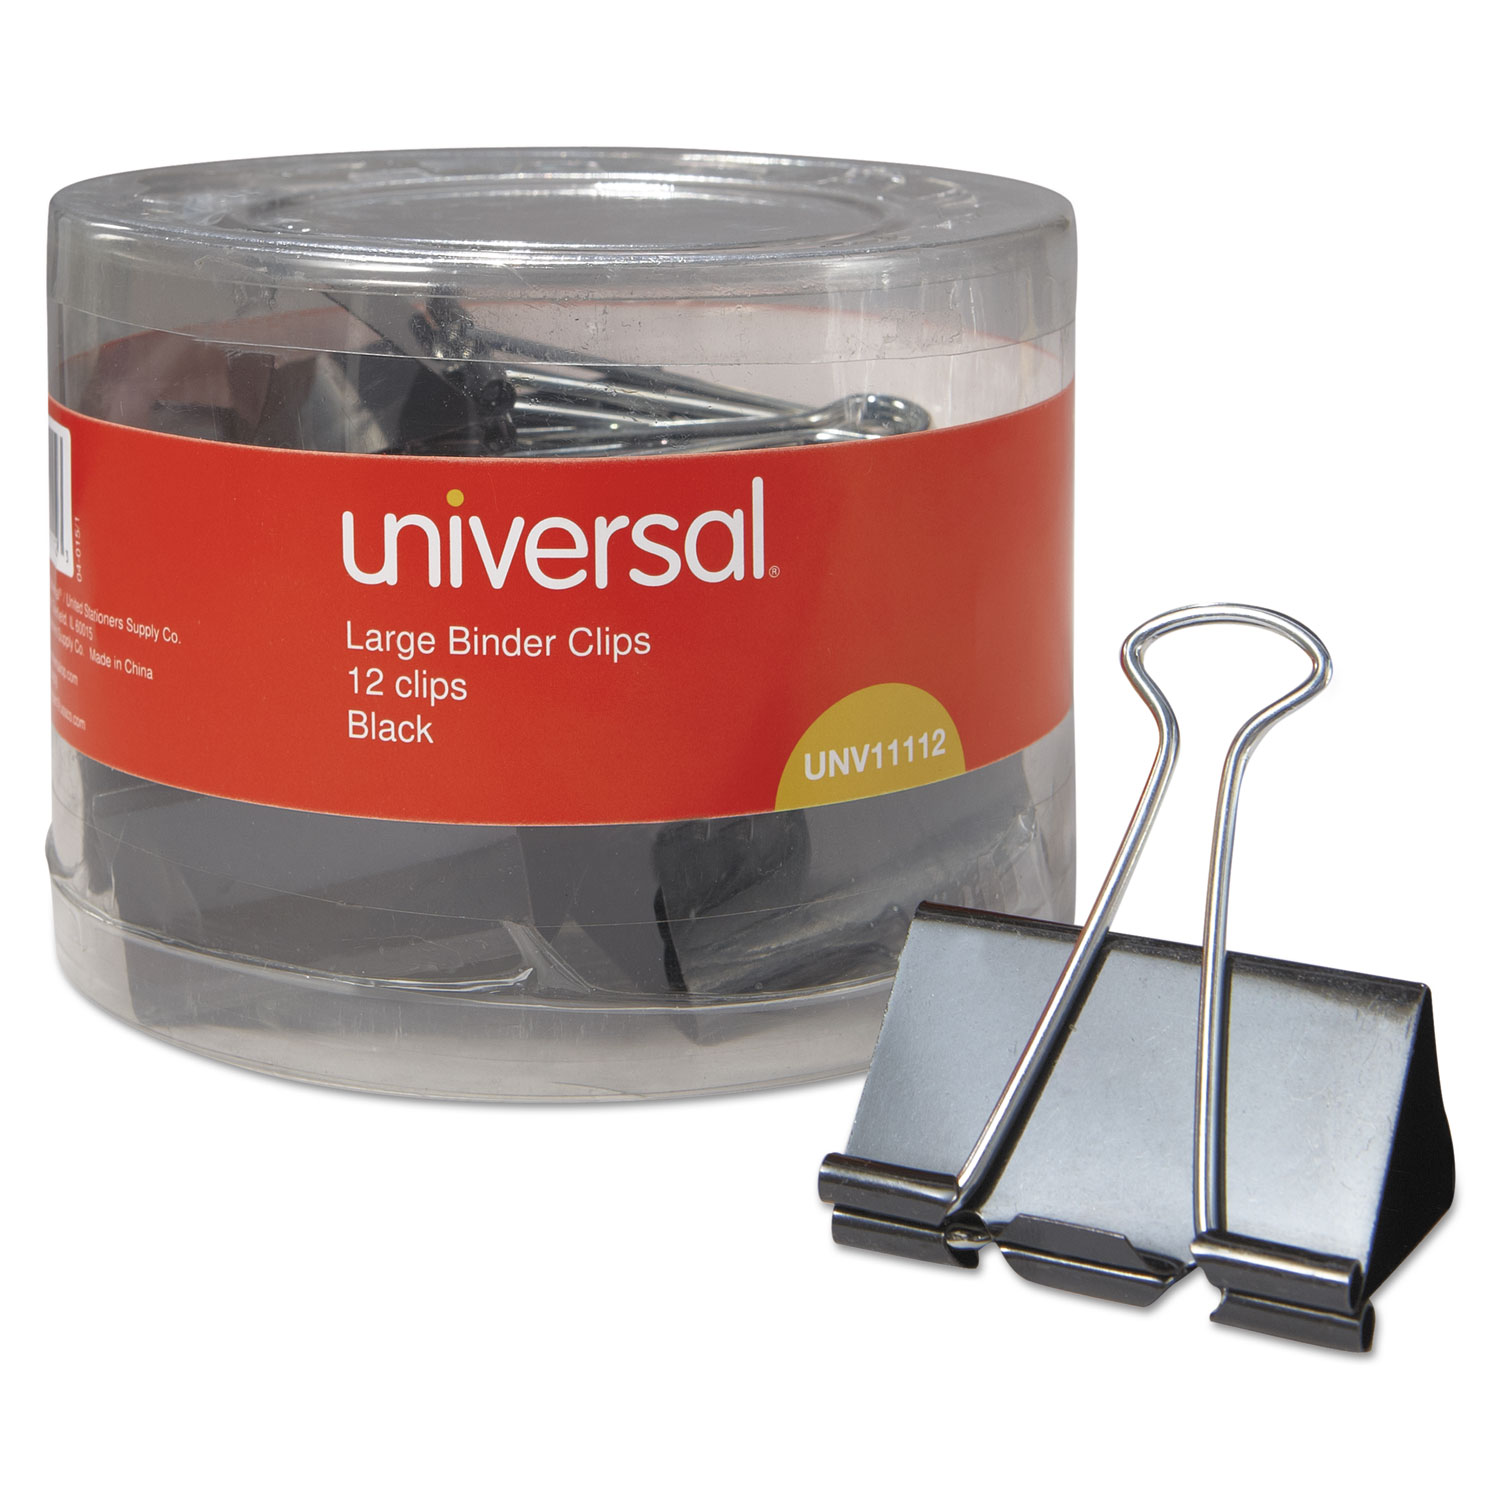  Universal UNV11112 Binder Clips in Dispenser Tub, Large, Black/Silver, 12/Pack (UNV11112) 